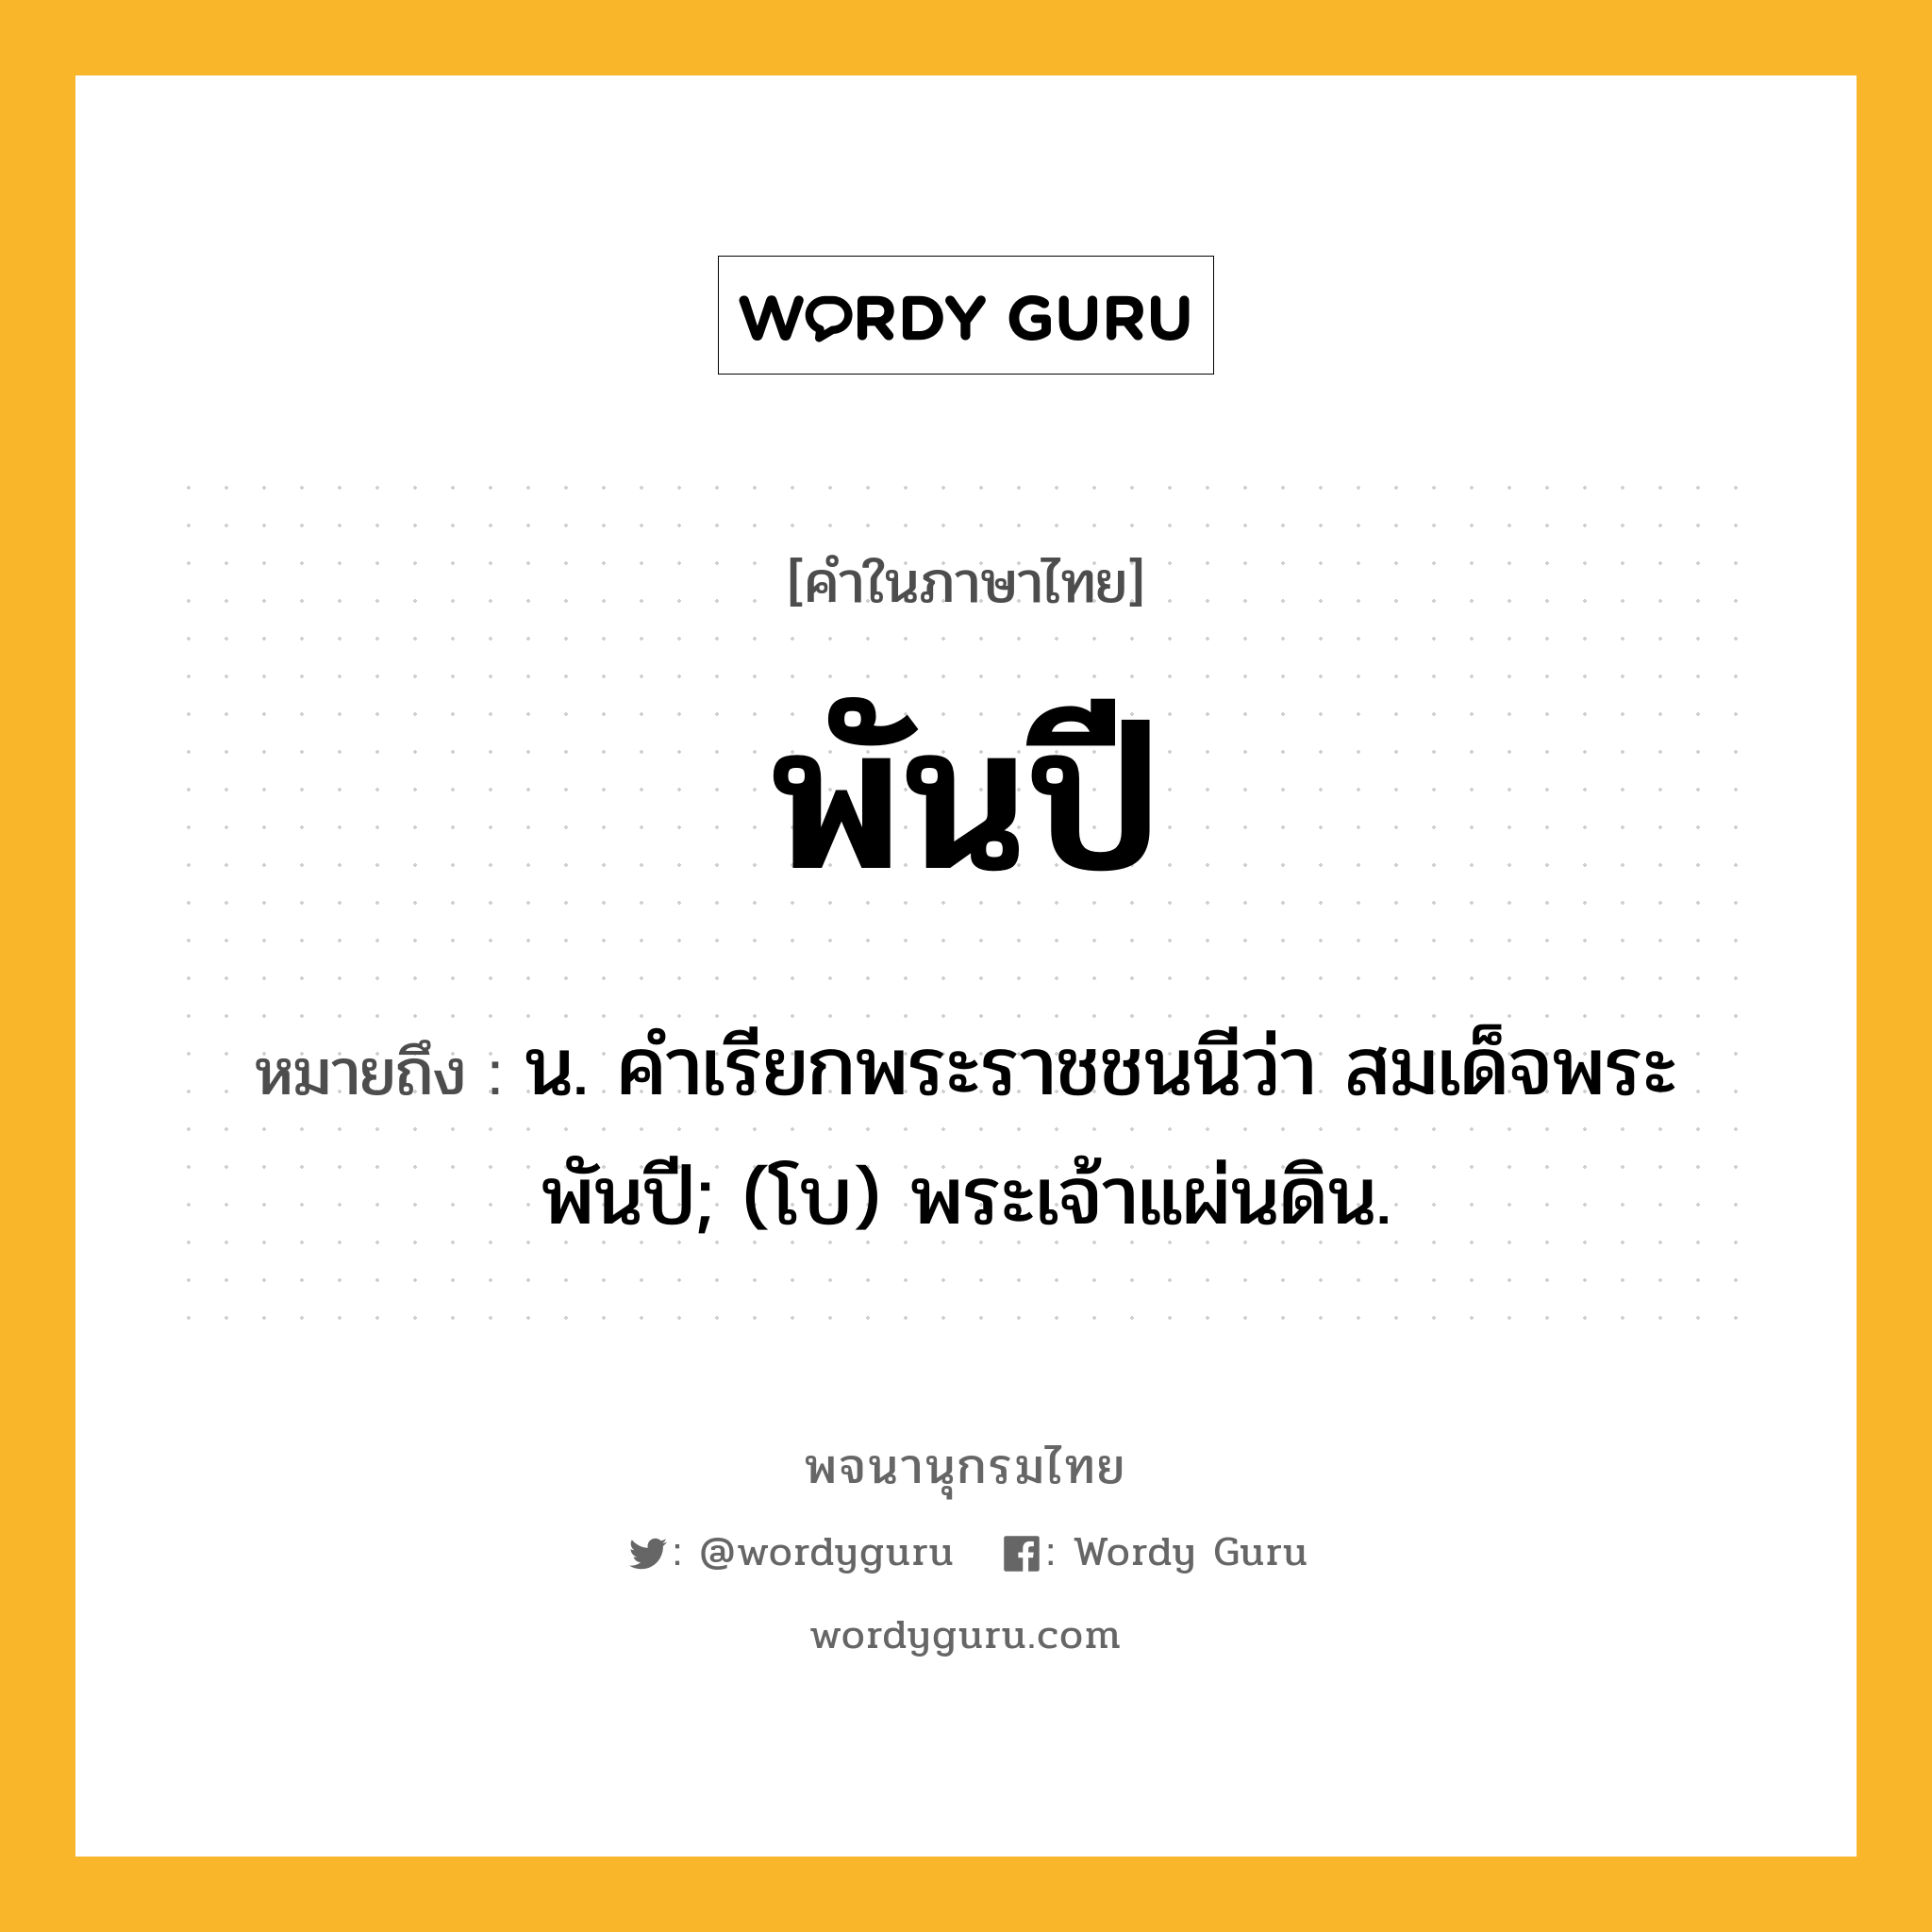 พันปี ความหมาย หมายถึงอะไร?, คำในภาษาไทย พันปี หมายถึง น. คําเรียกพระราชชนนีว่า สมเด็จพระพันปี; (โบ) พระเจ้าแผ่นดิน.